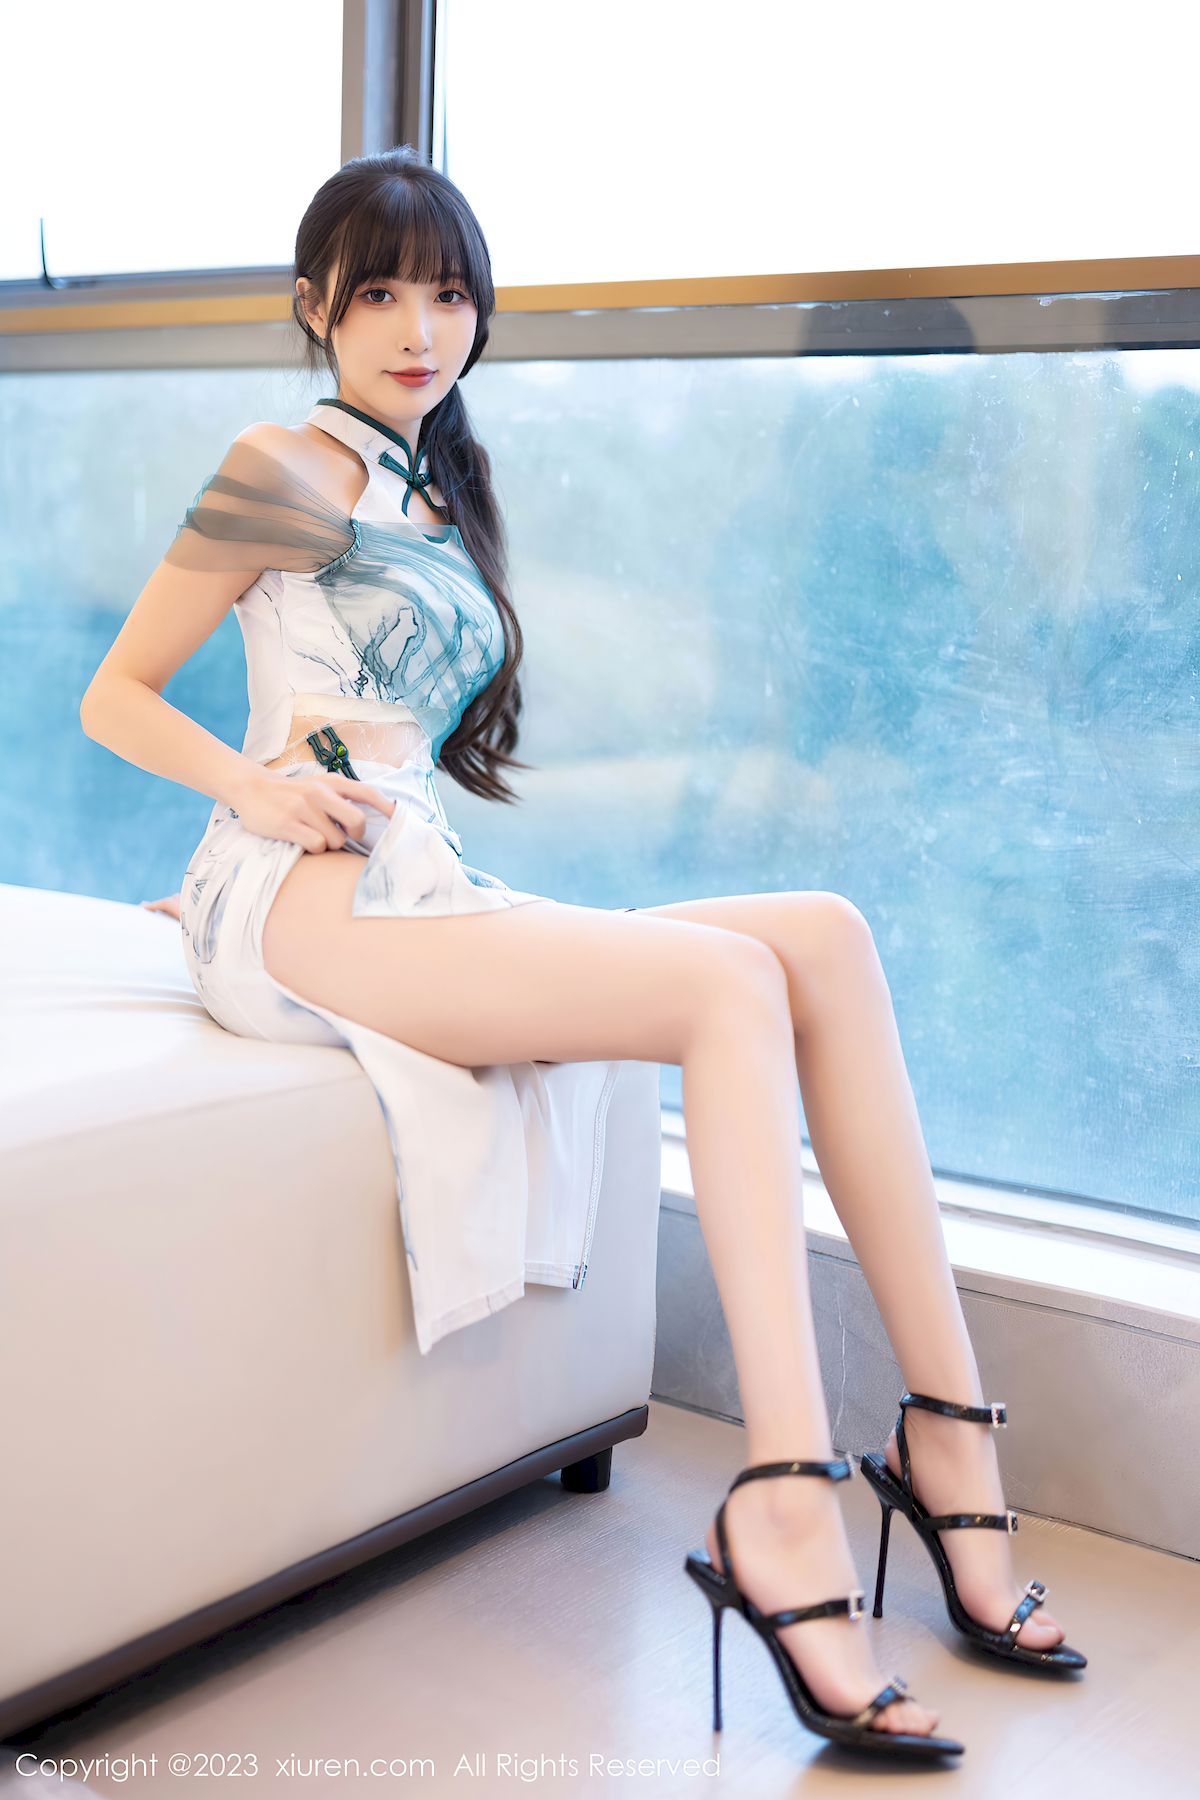 林星阑白色带图案旗袍服饰修长美腿写真